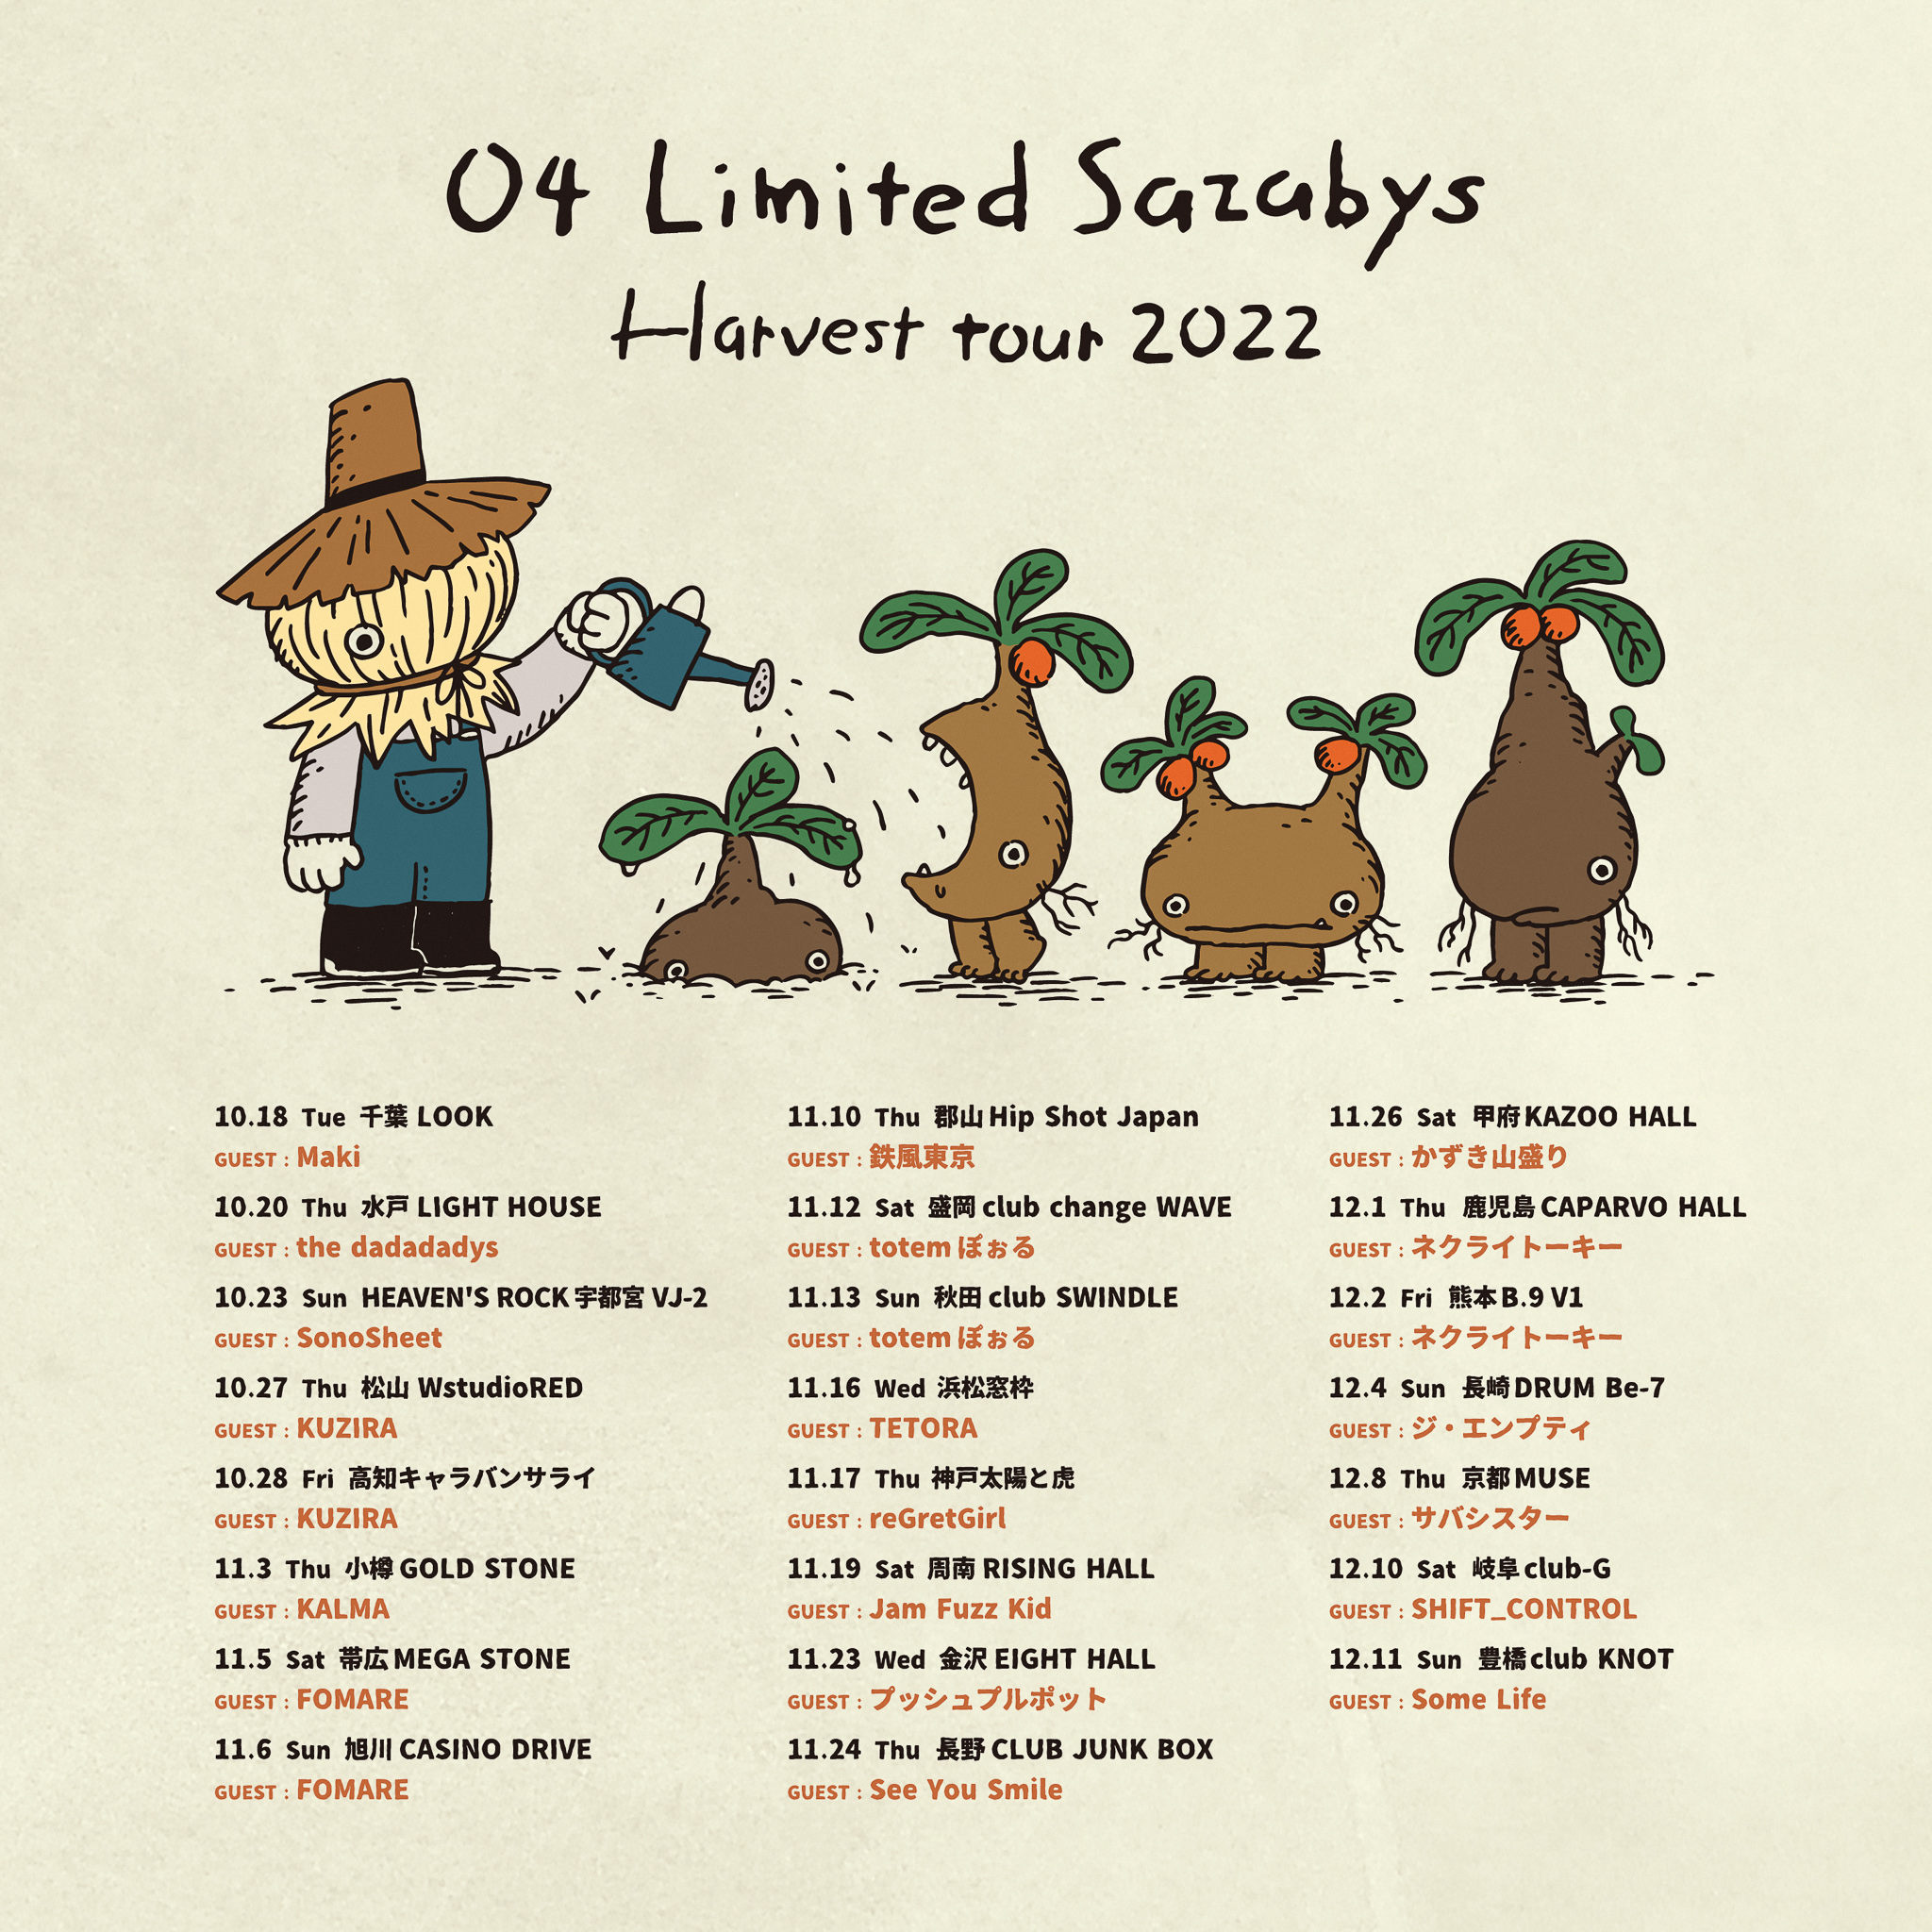 【熊本】04 Limited Sazabys "Harvest tour 2022" (熊本B.9 V1)